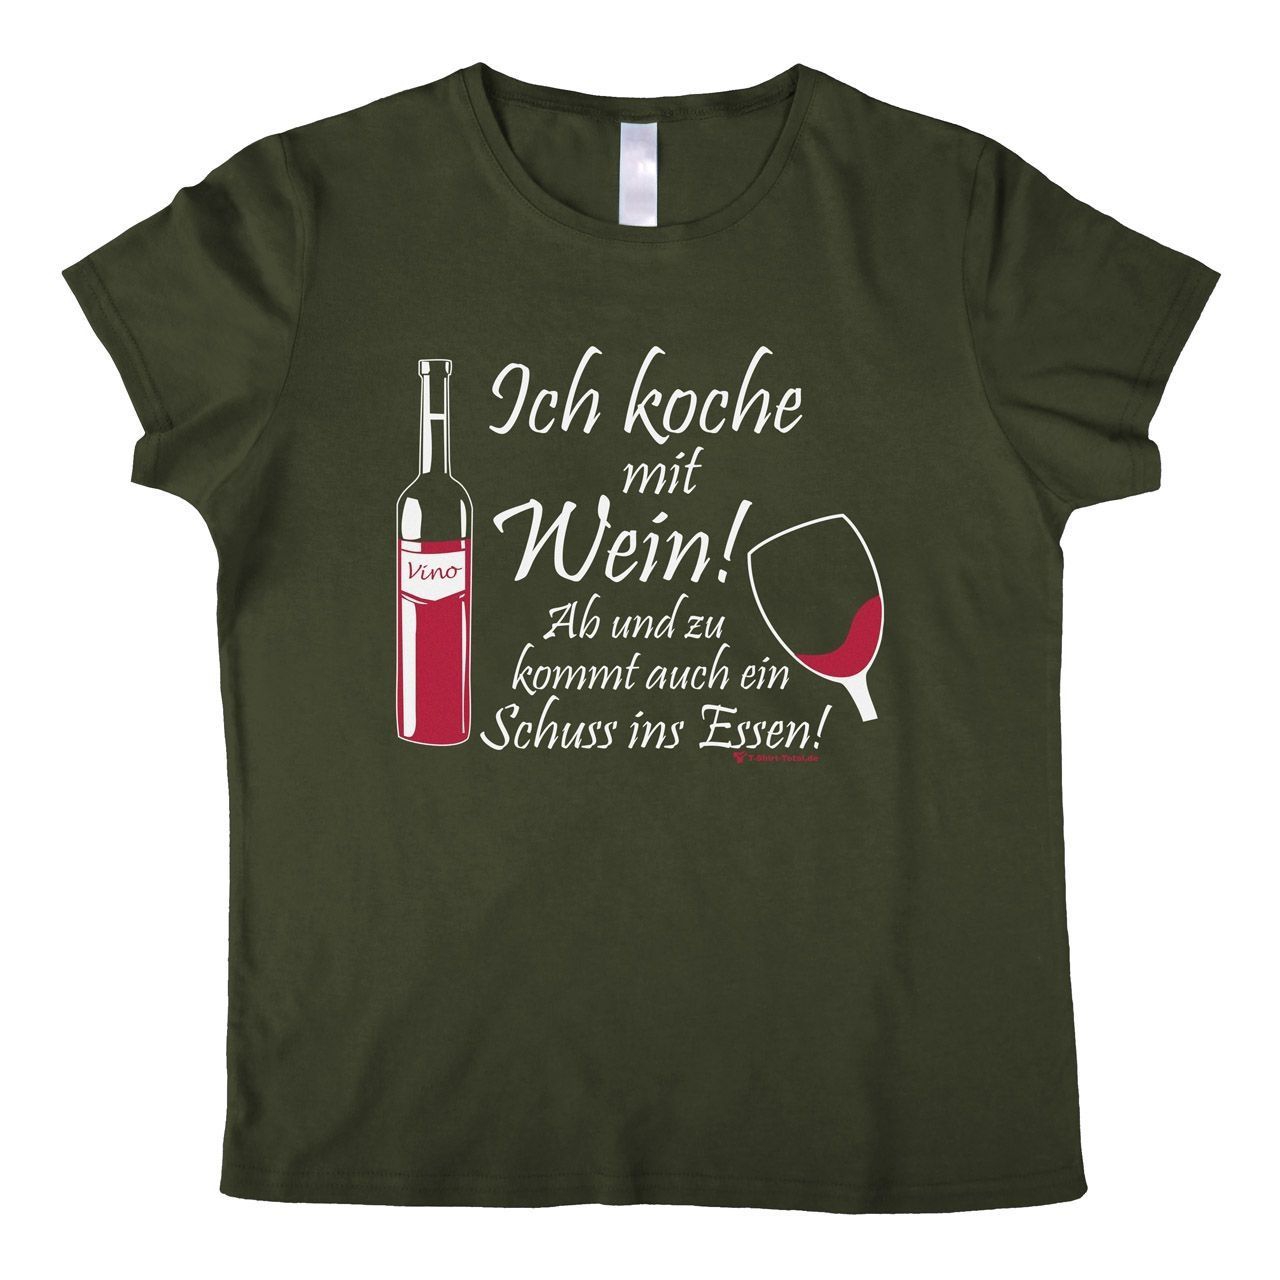 Koche mit Wein Woman T-Shirt khaki Large